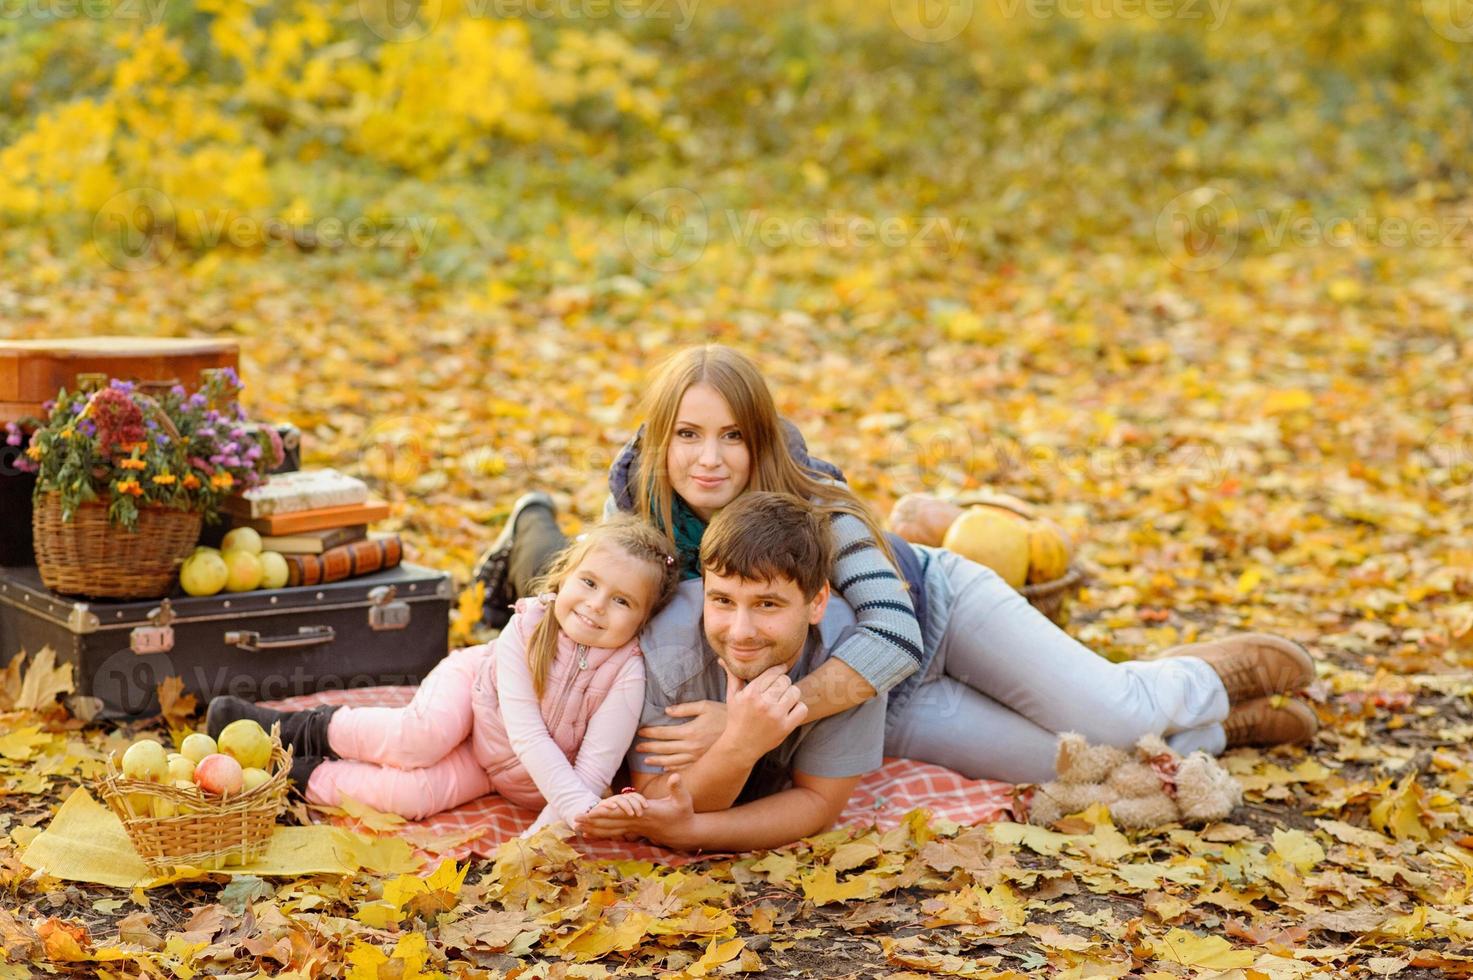 Familie, die im Herbstpark spazieren geht foto